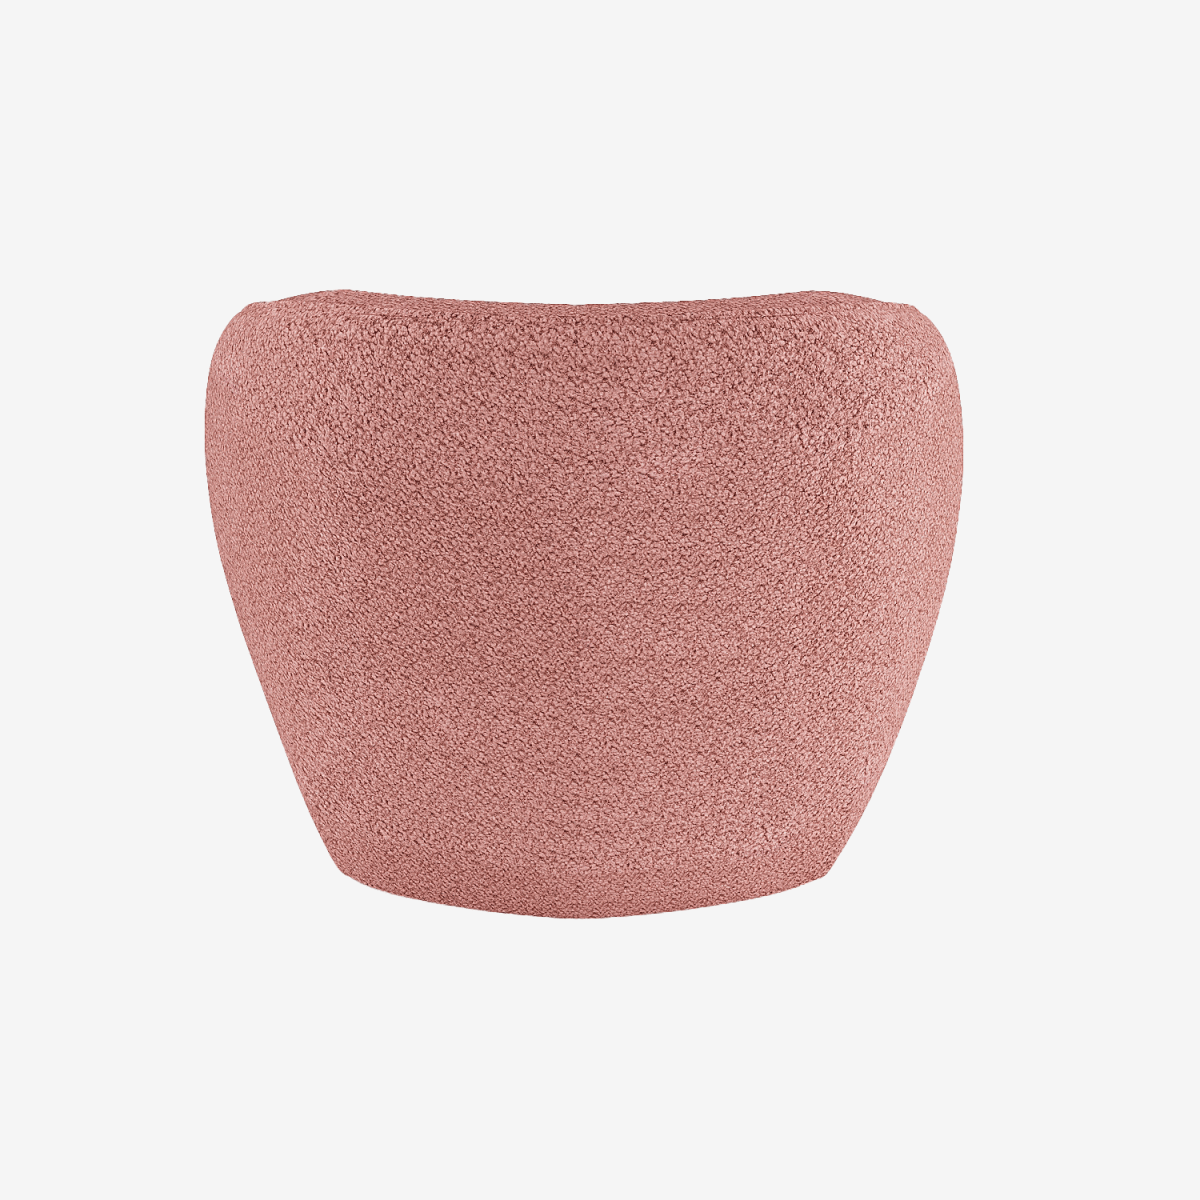 Fauteuil design bouclé rose - Potiron Paris, déco et meuble contemporain design pas cher